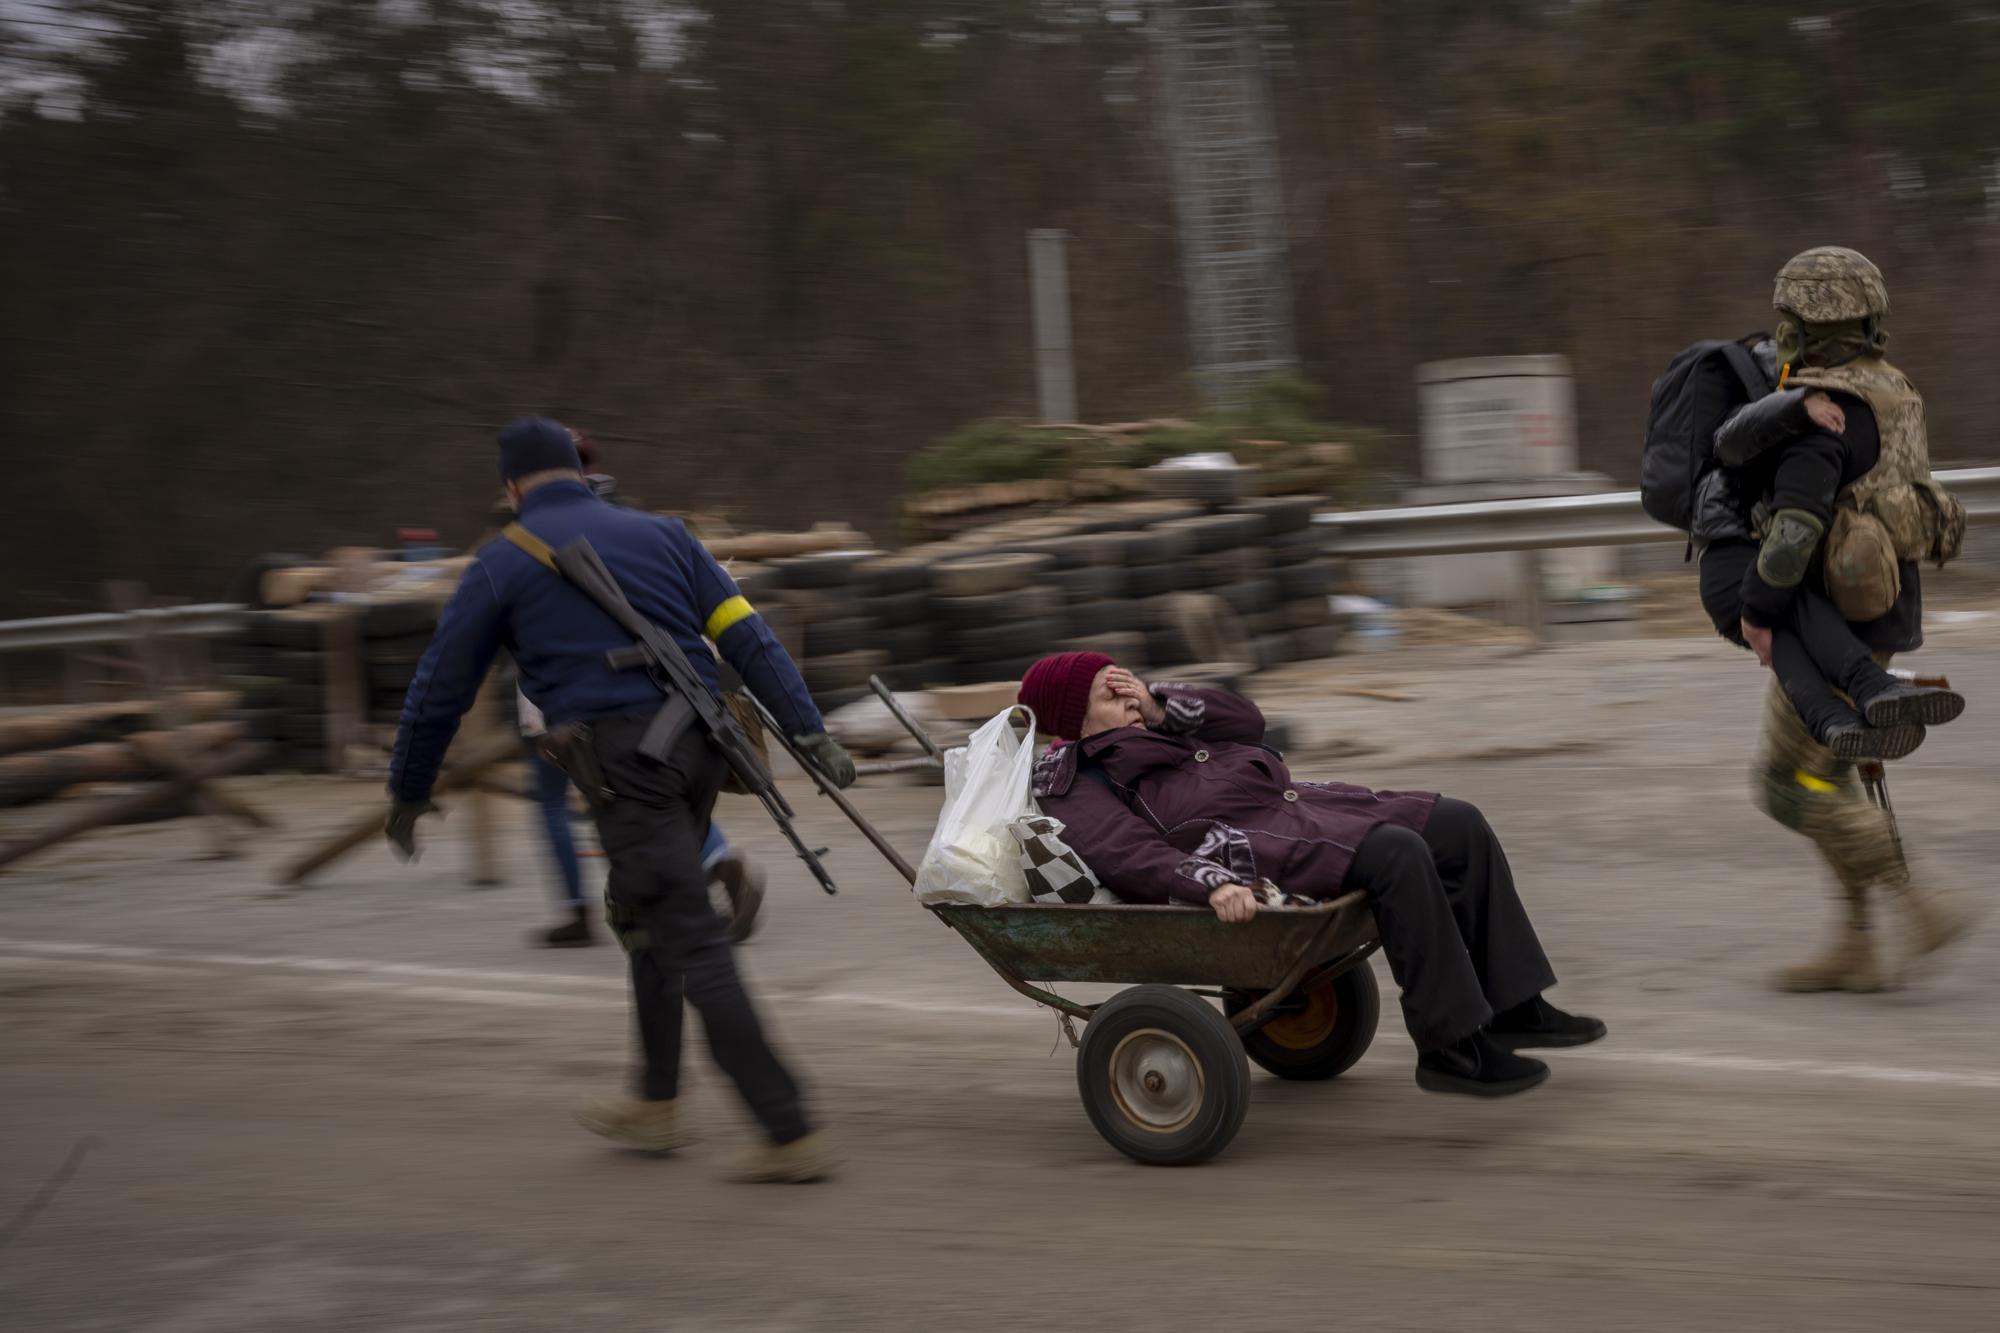 Ảnh thế giới 7 ngày qua: Bom đạn bao trùm, hàng trăm nghìn người di tản khỏi Ukraine - Ảnh 6.